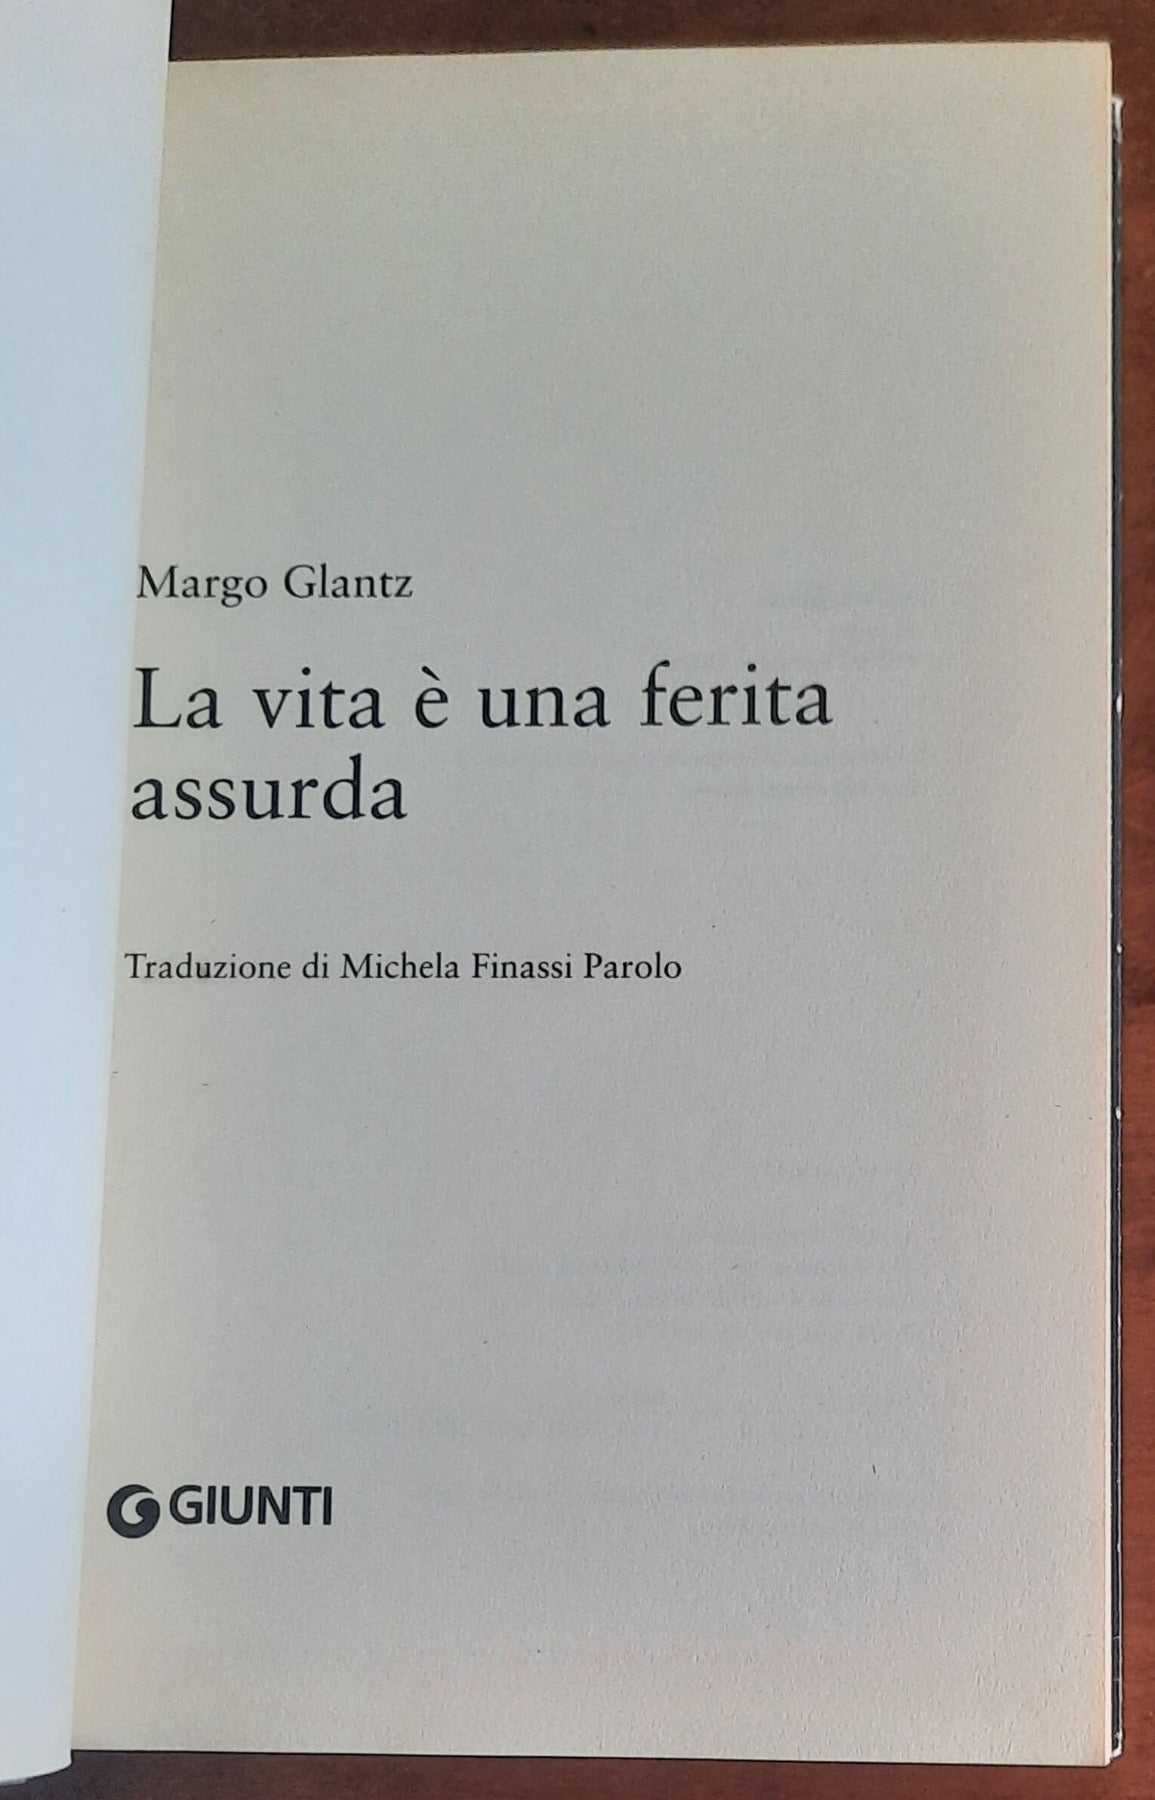 La vita è una ferita assurda - di Margo Glantz - Giunti